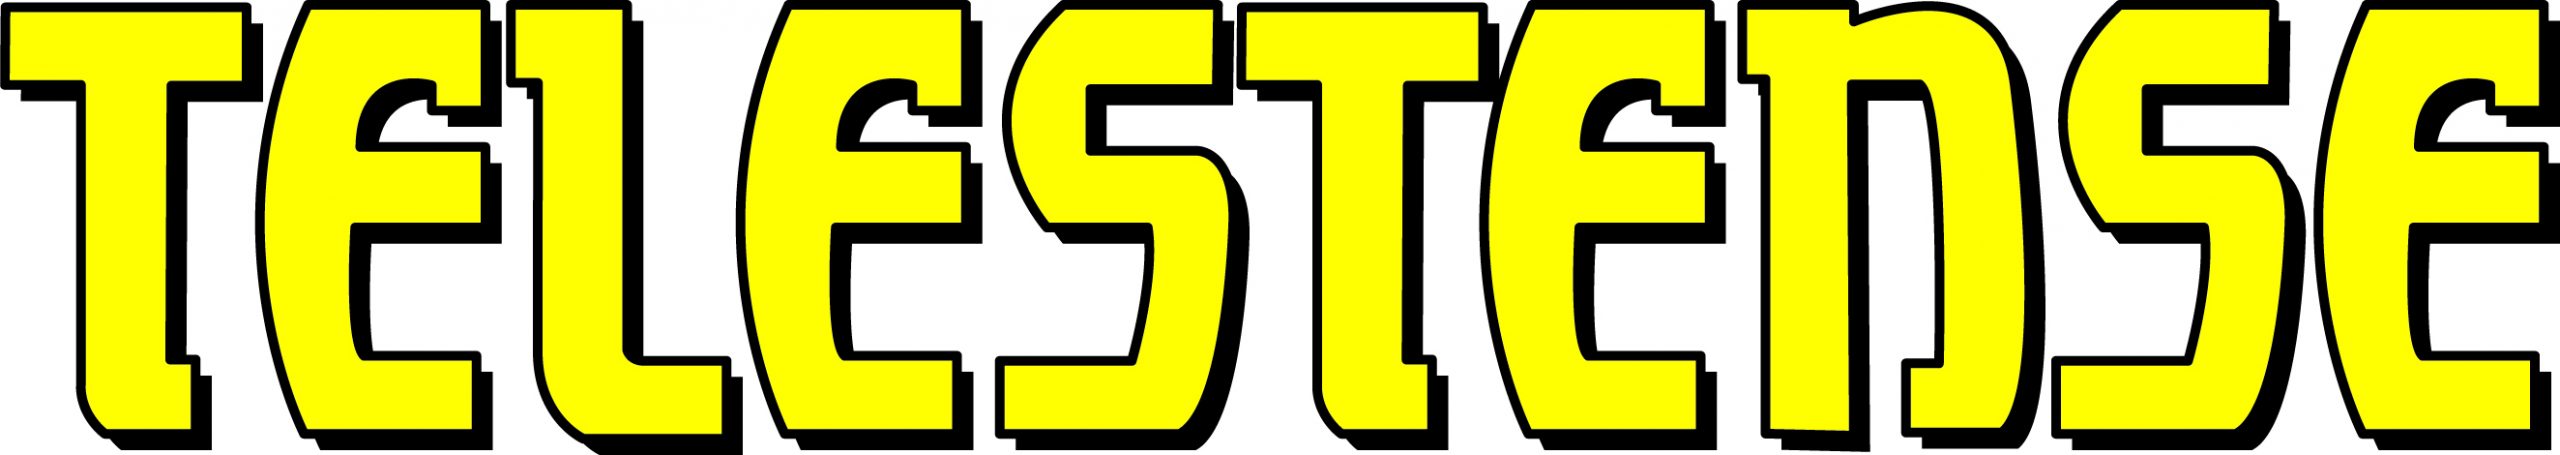 Logo Telestense (1)